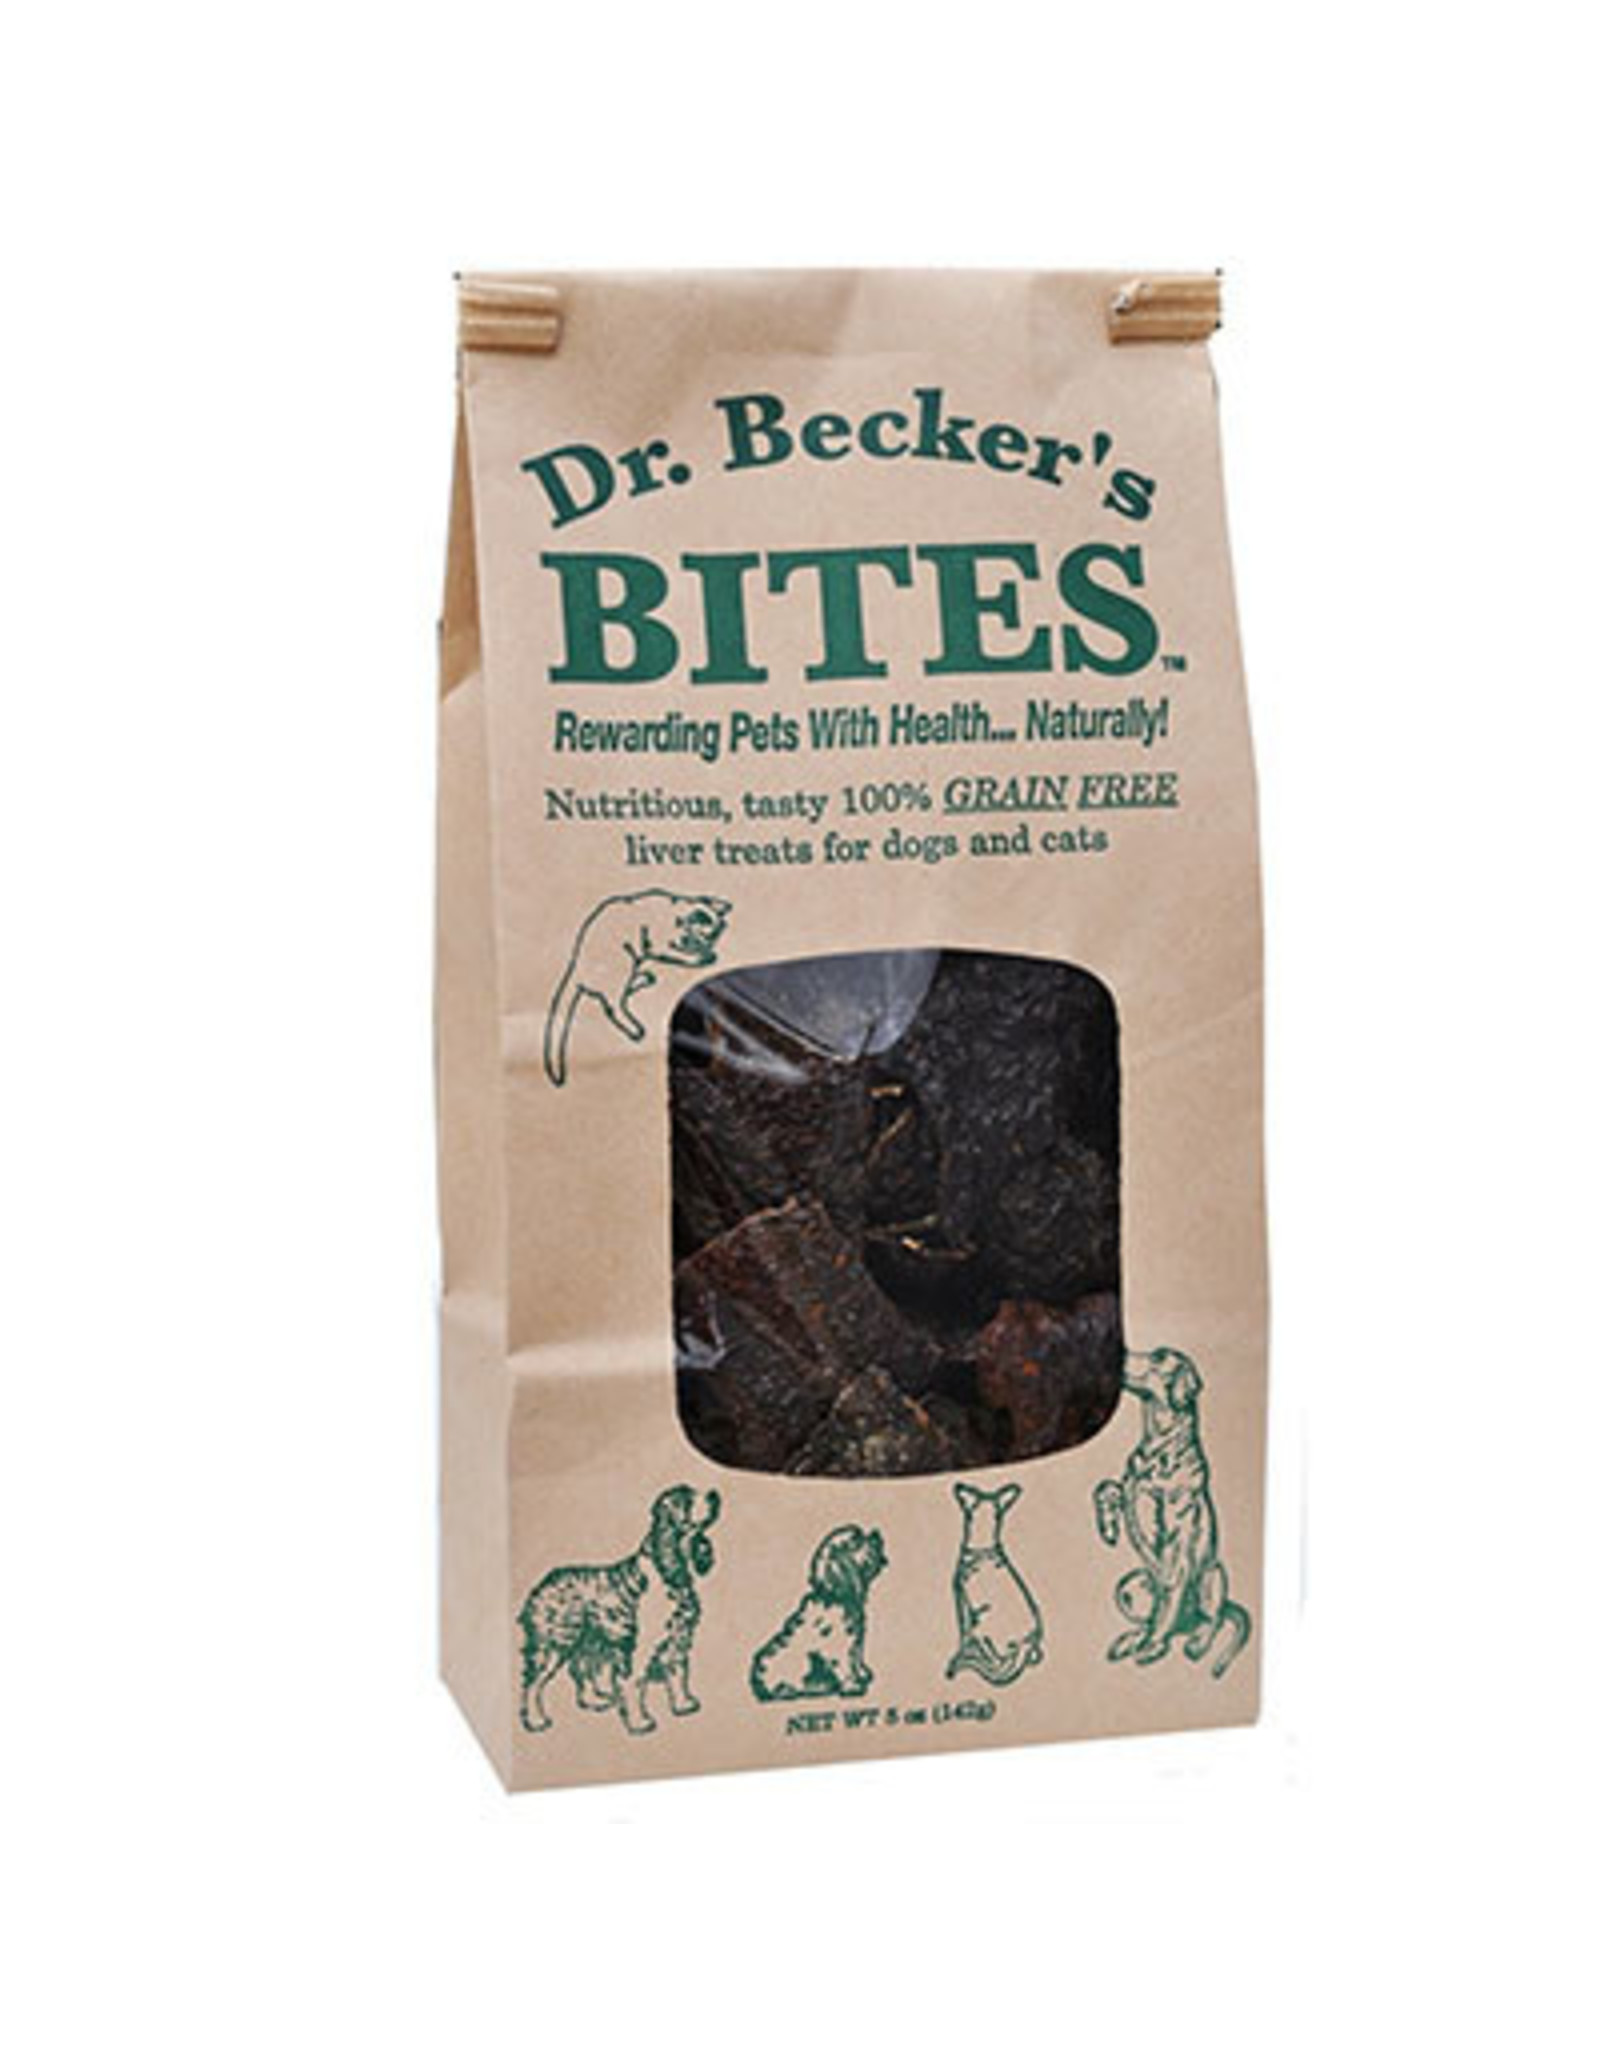 Dr. Becker's DR. BECKER'S BITES BEEF LIVER TREATS 5OZ